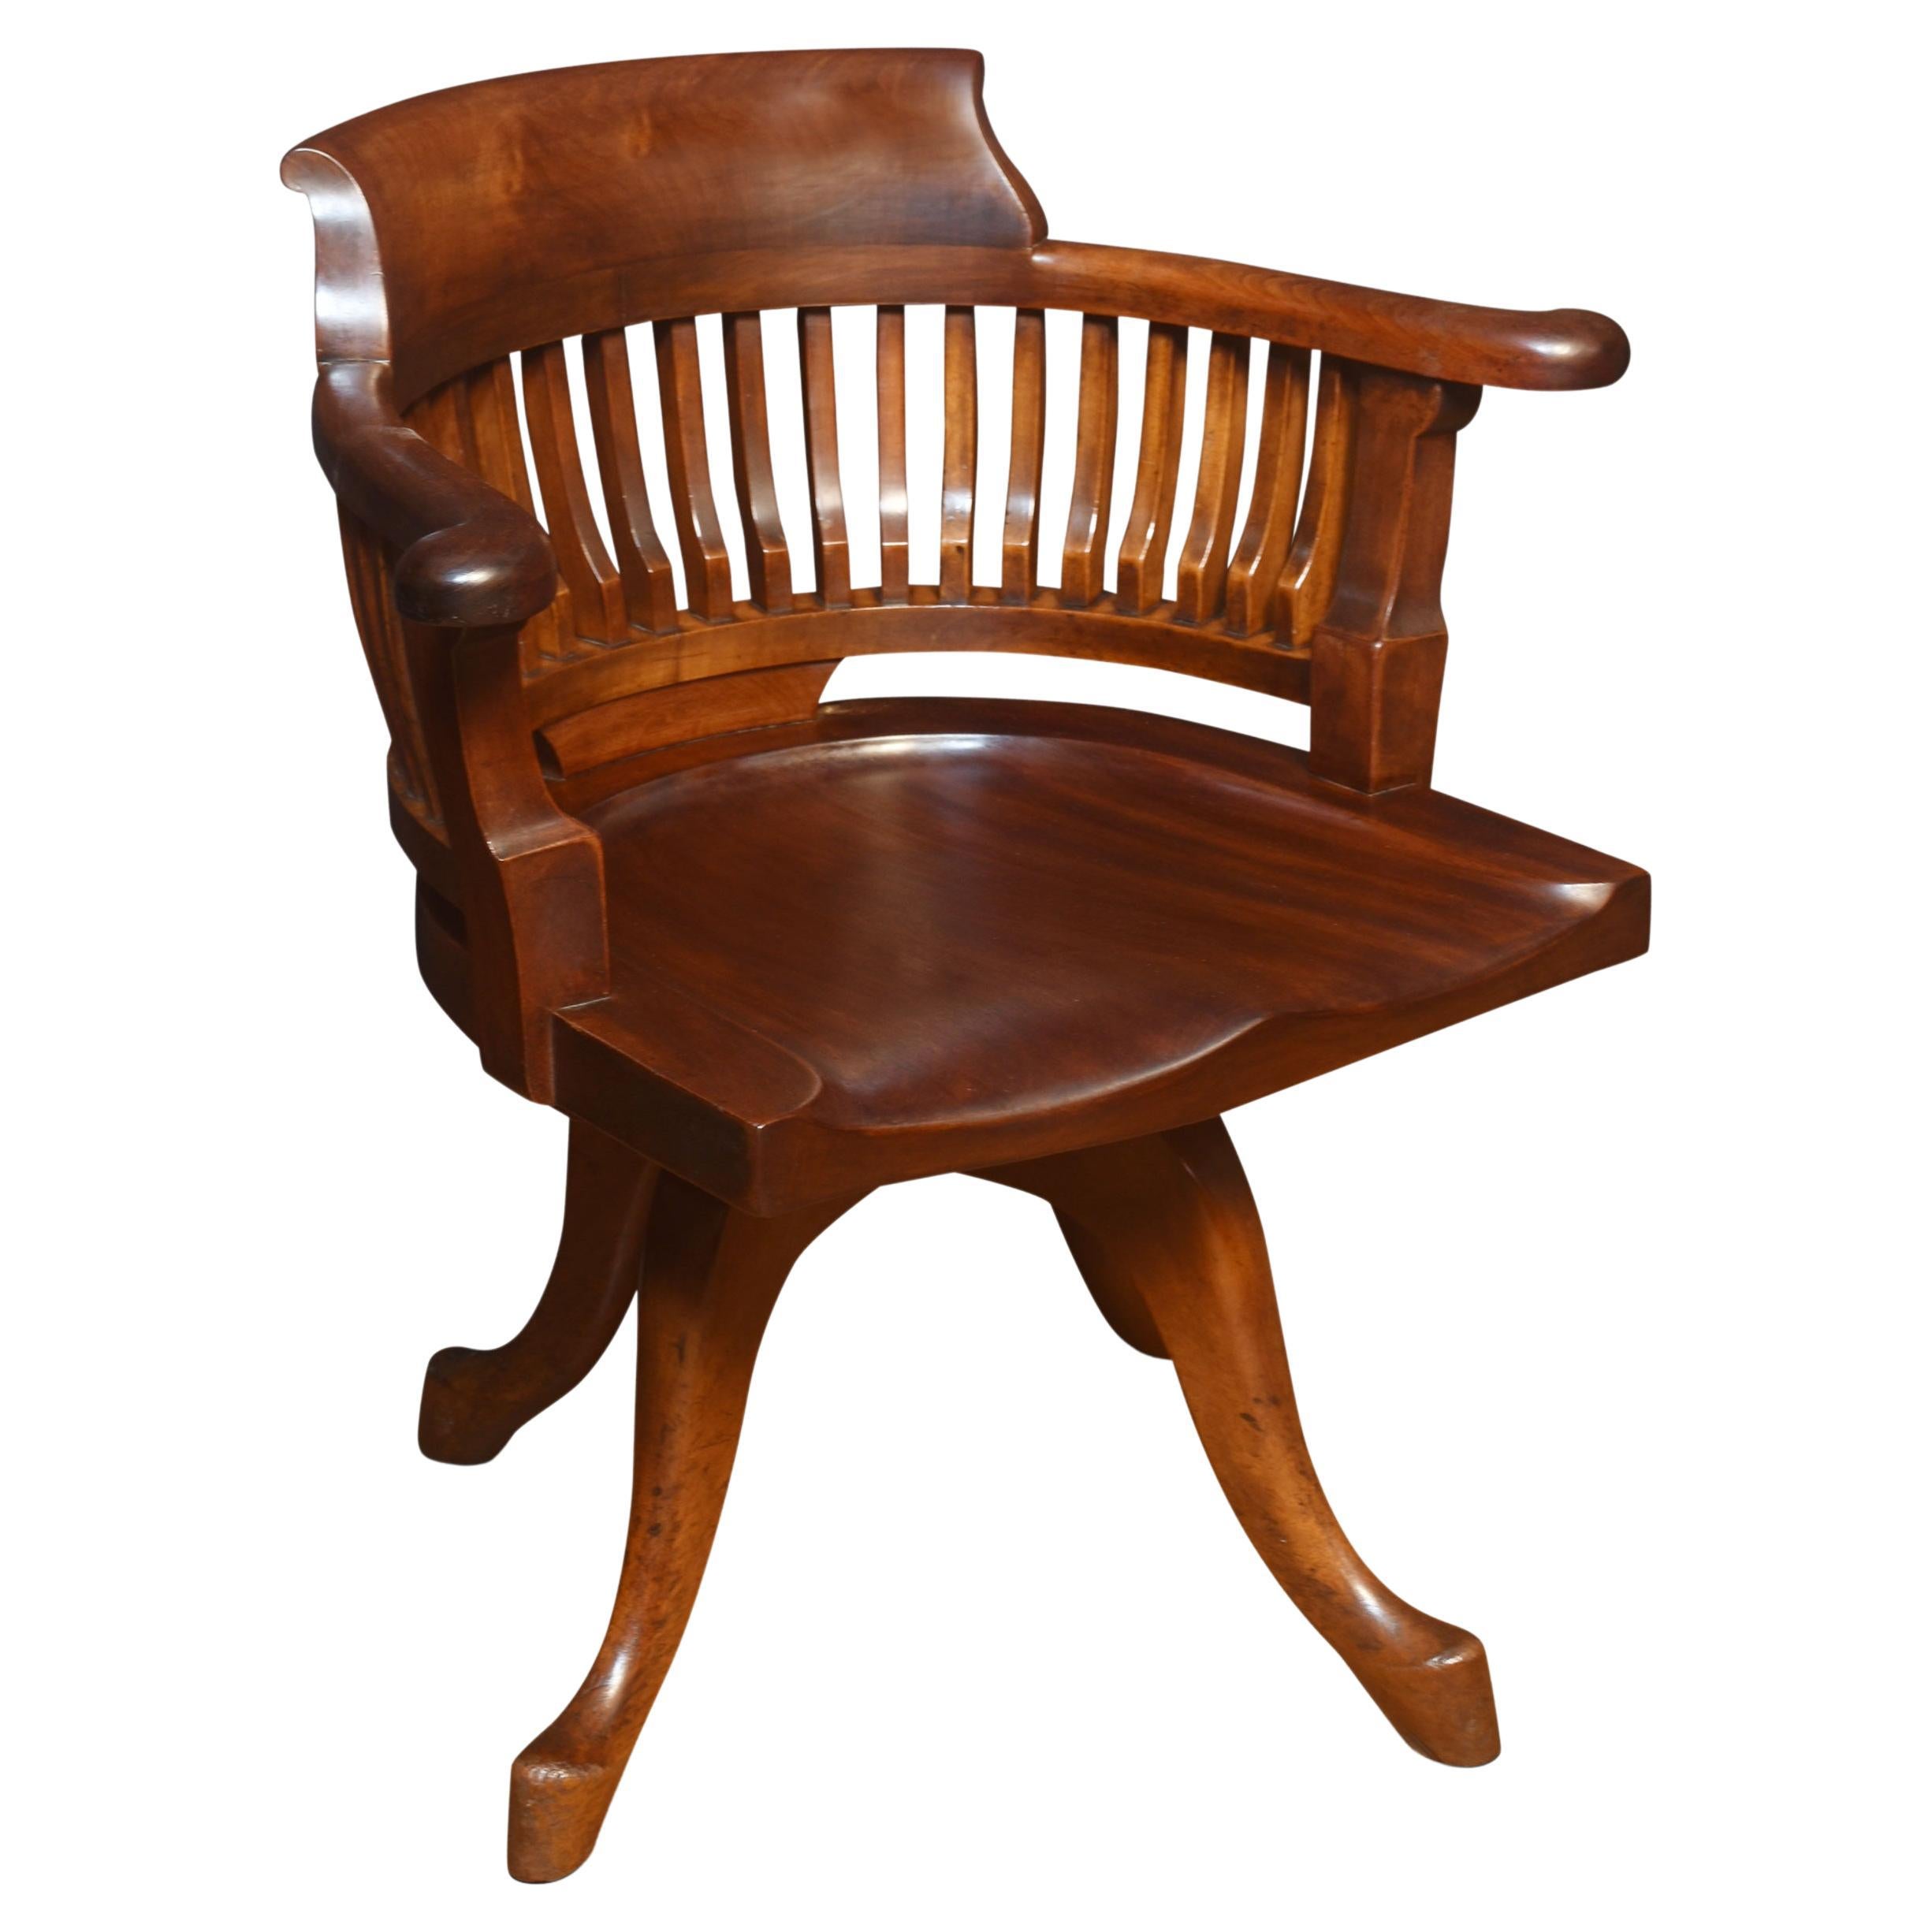 Chaise de bureau tournante de capitaine en acajou du début du 20e siècle, avec forme en bois.